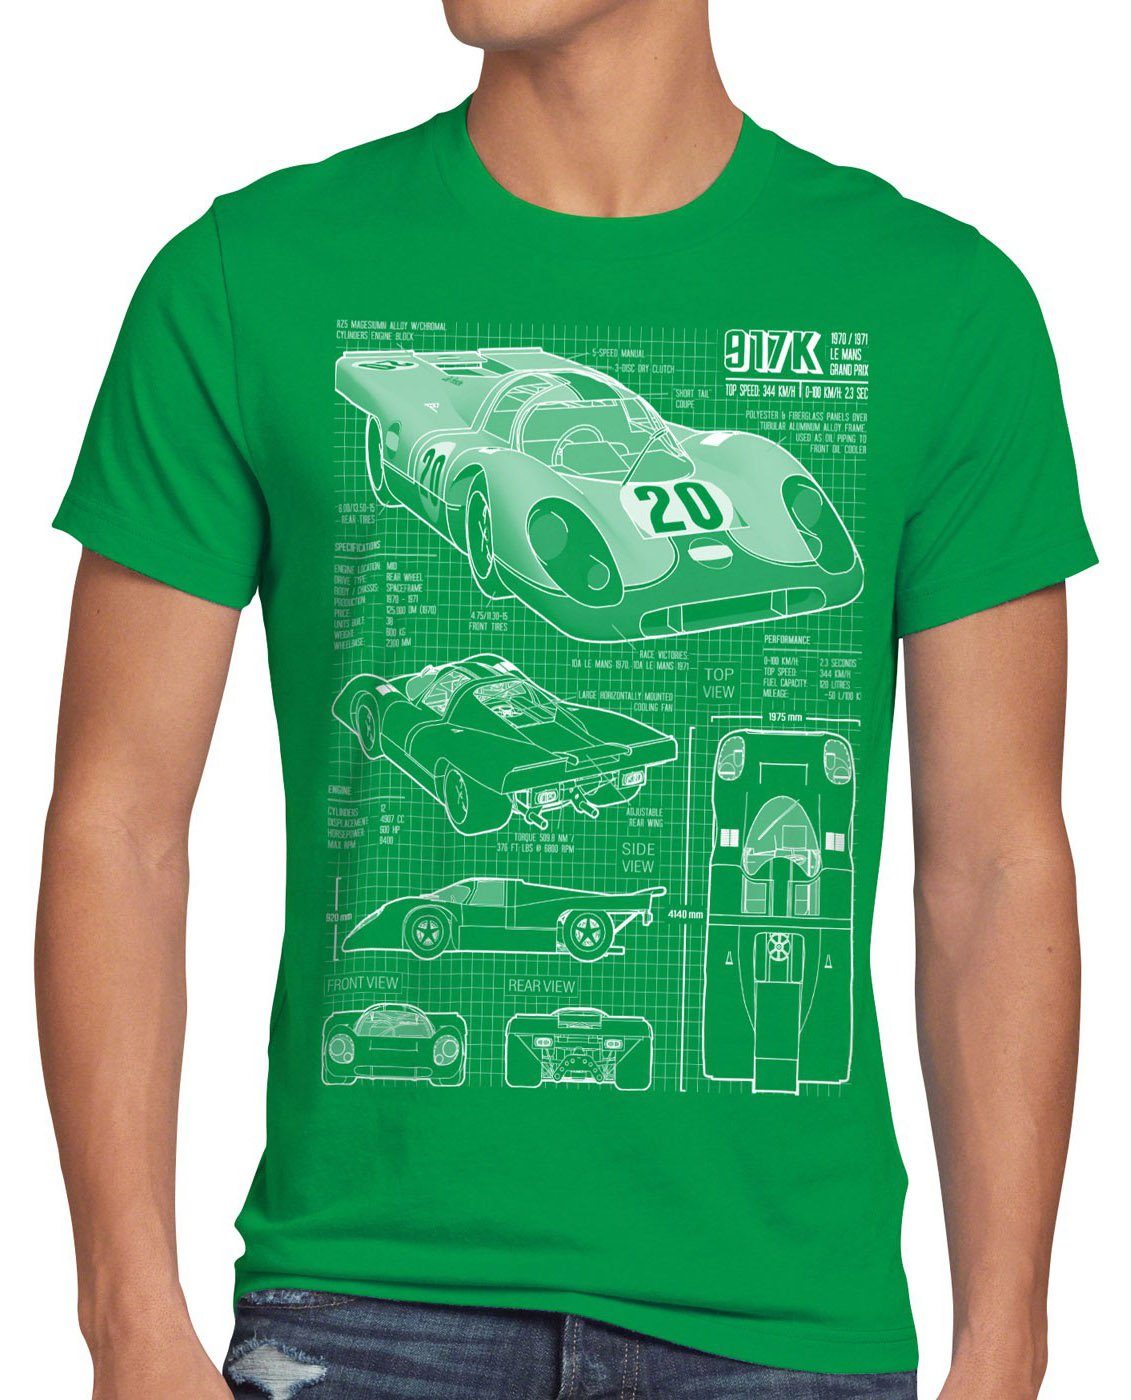 style3 Print-Shirt Herren T-Shirt 917K Le Mans 24stunden rennen 997 996 gt2 918 914 916 924 mcqueen grün